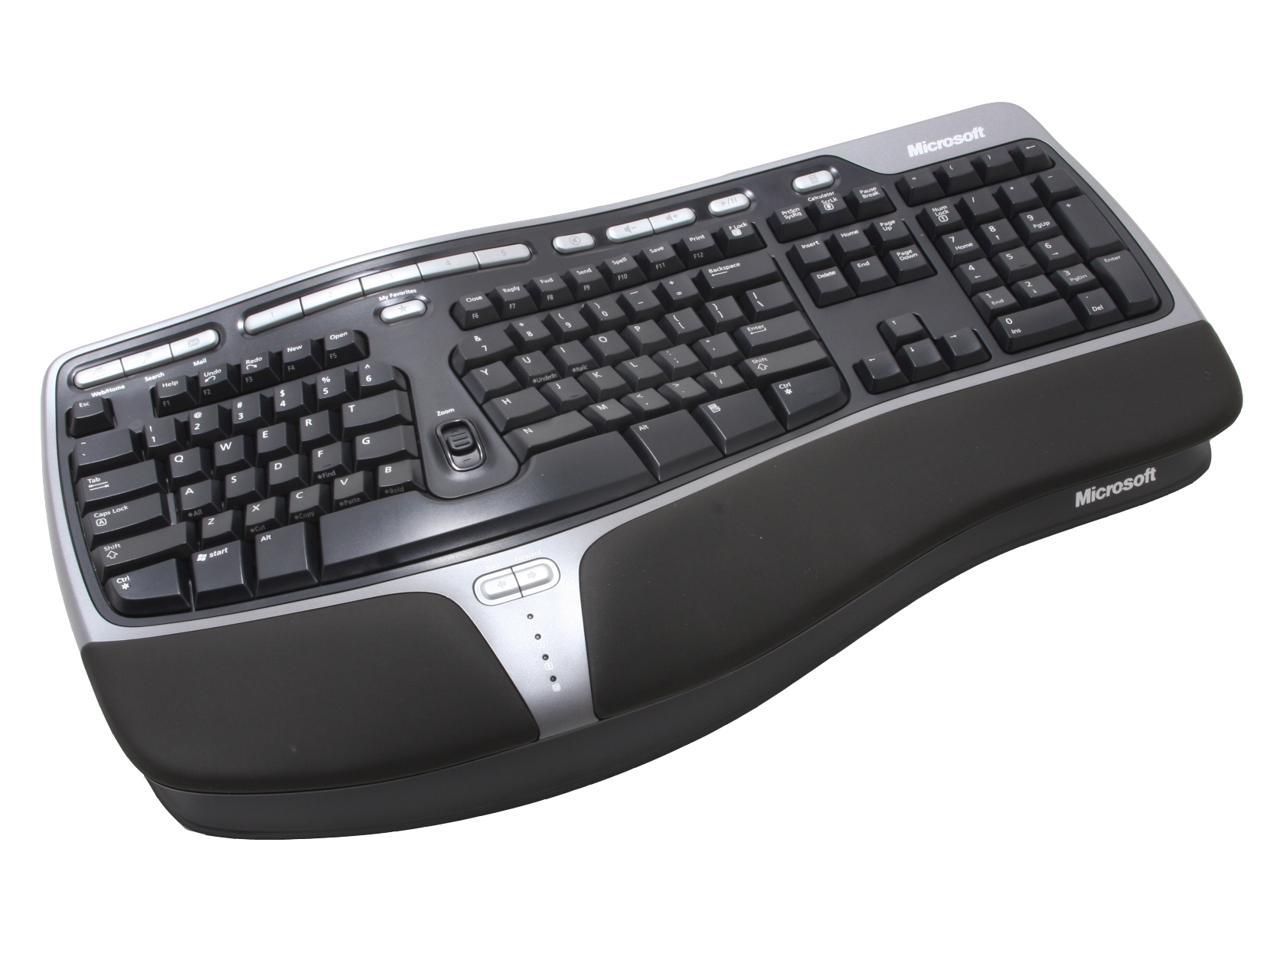 best wireless ergonomic keyboard 2016 for wrist pain